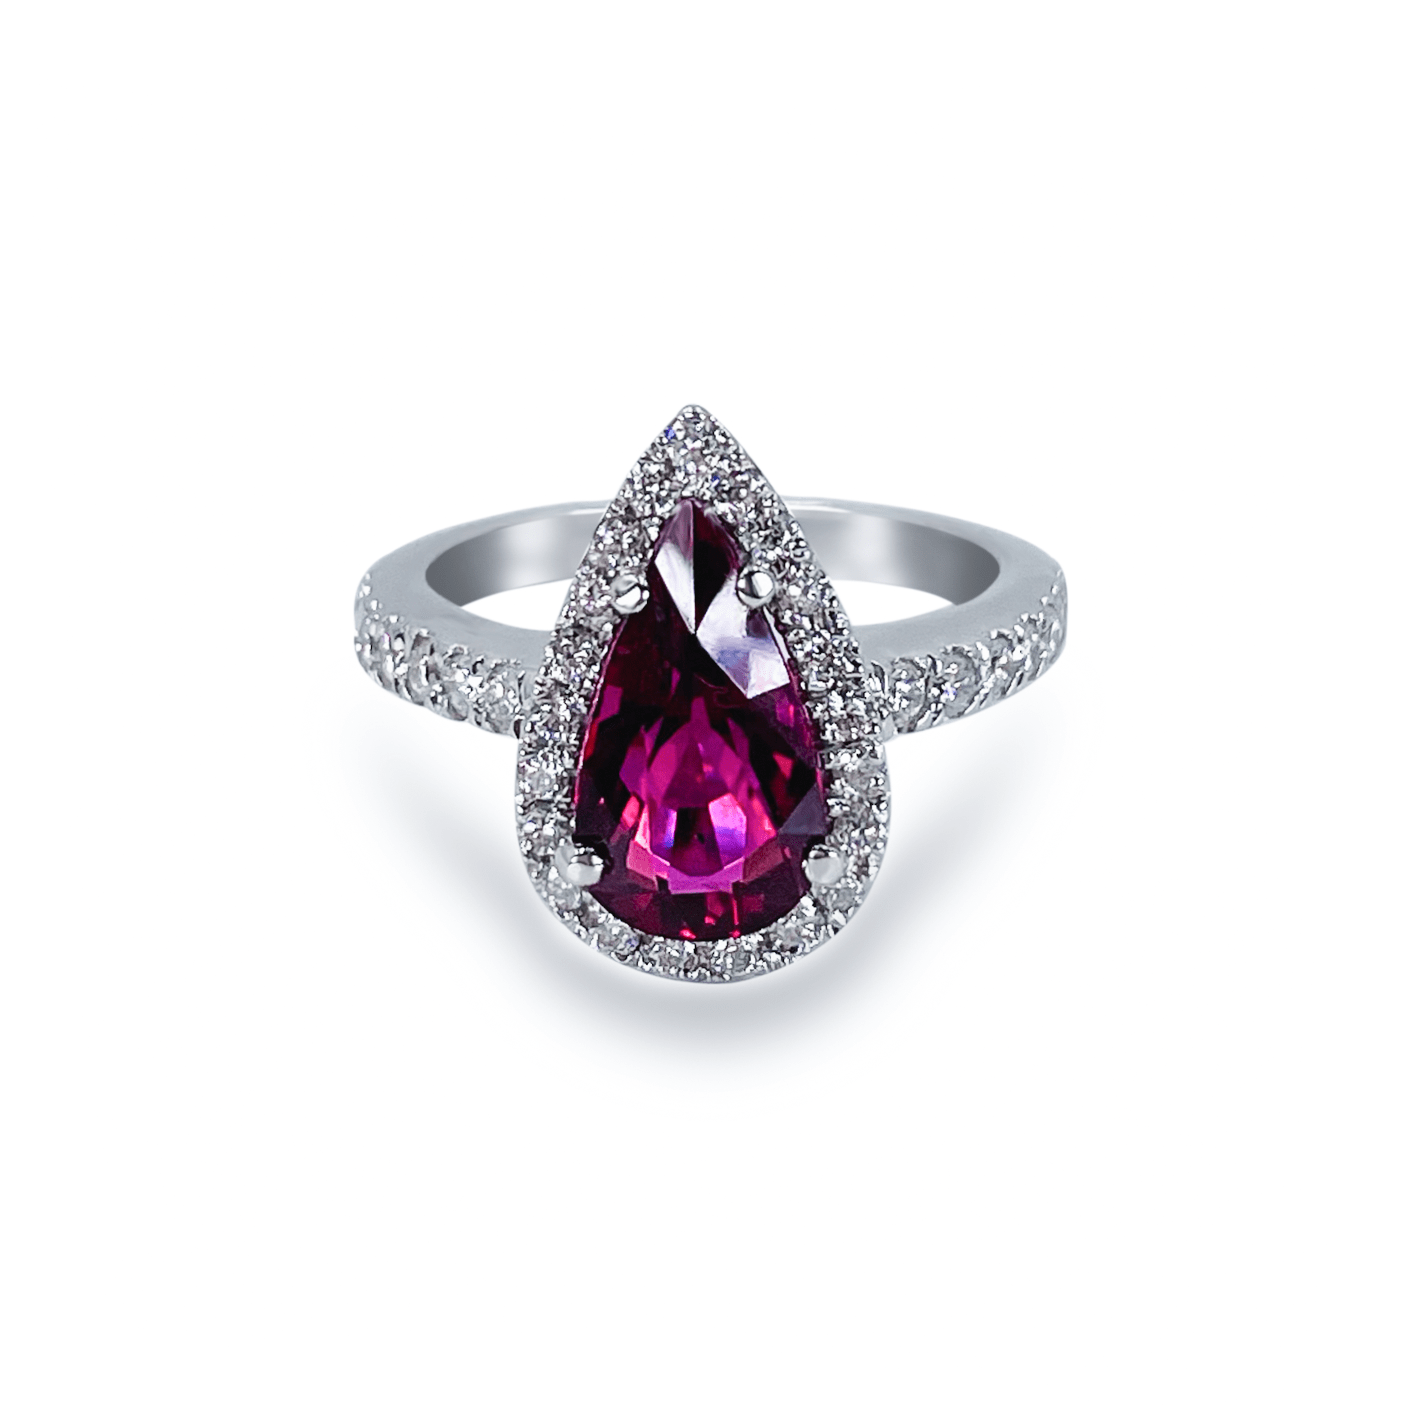 Rubellite with Diamond Halo Ring- جرس - Luxury Diamond Jewelry shop Dubai - SABA DIAMONDS